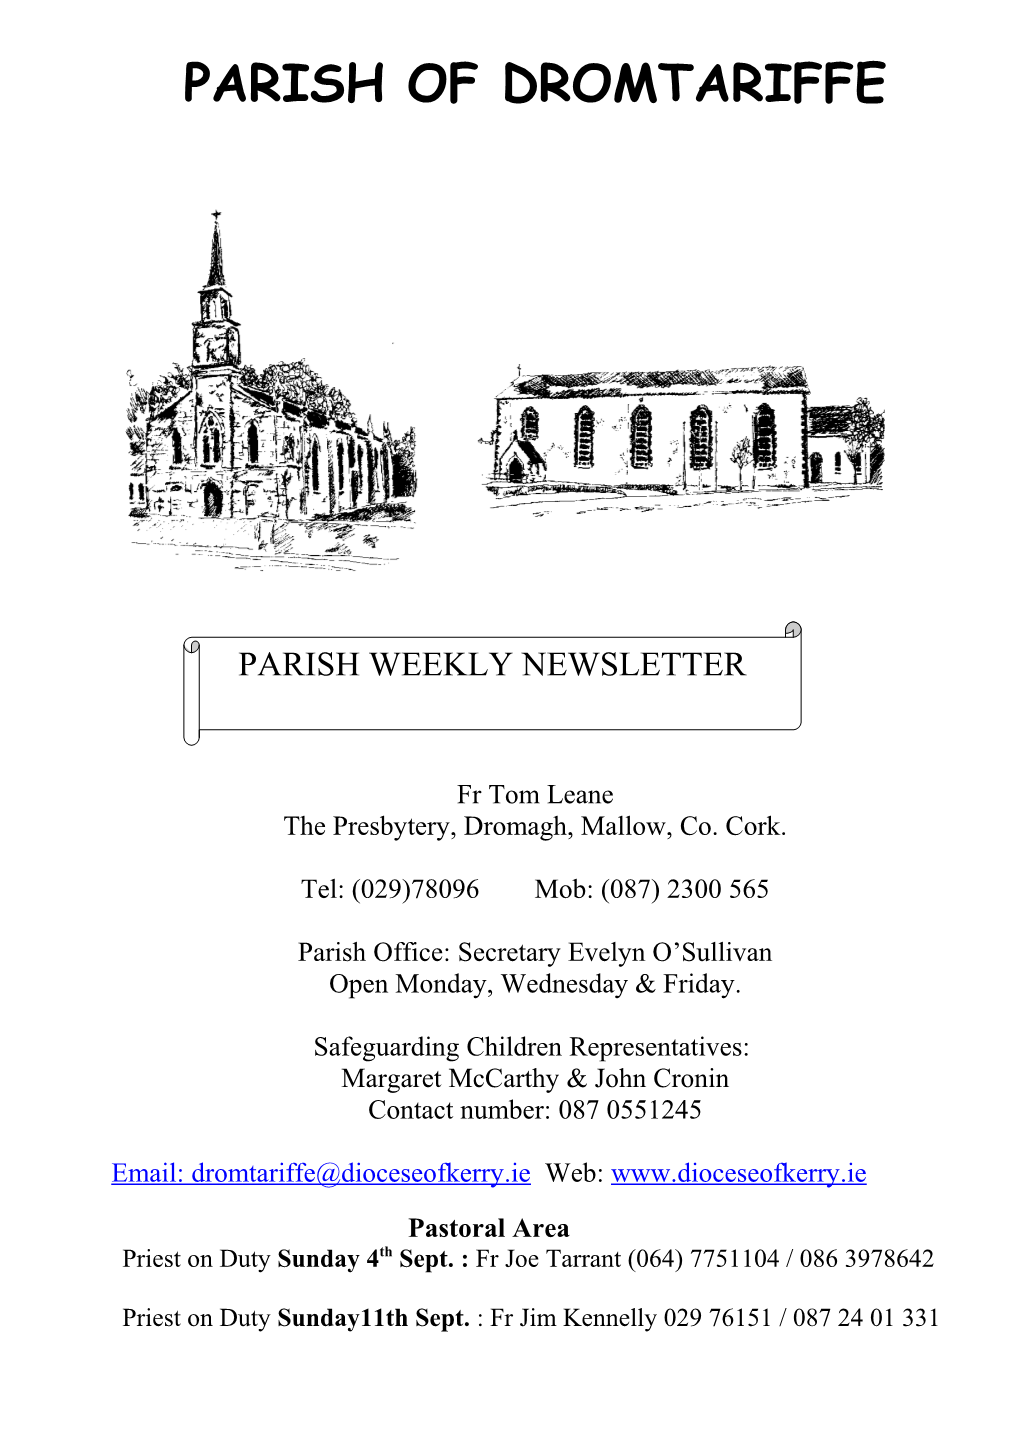 The Presbytery, Dromagh, Mallow, Co. Cork